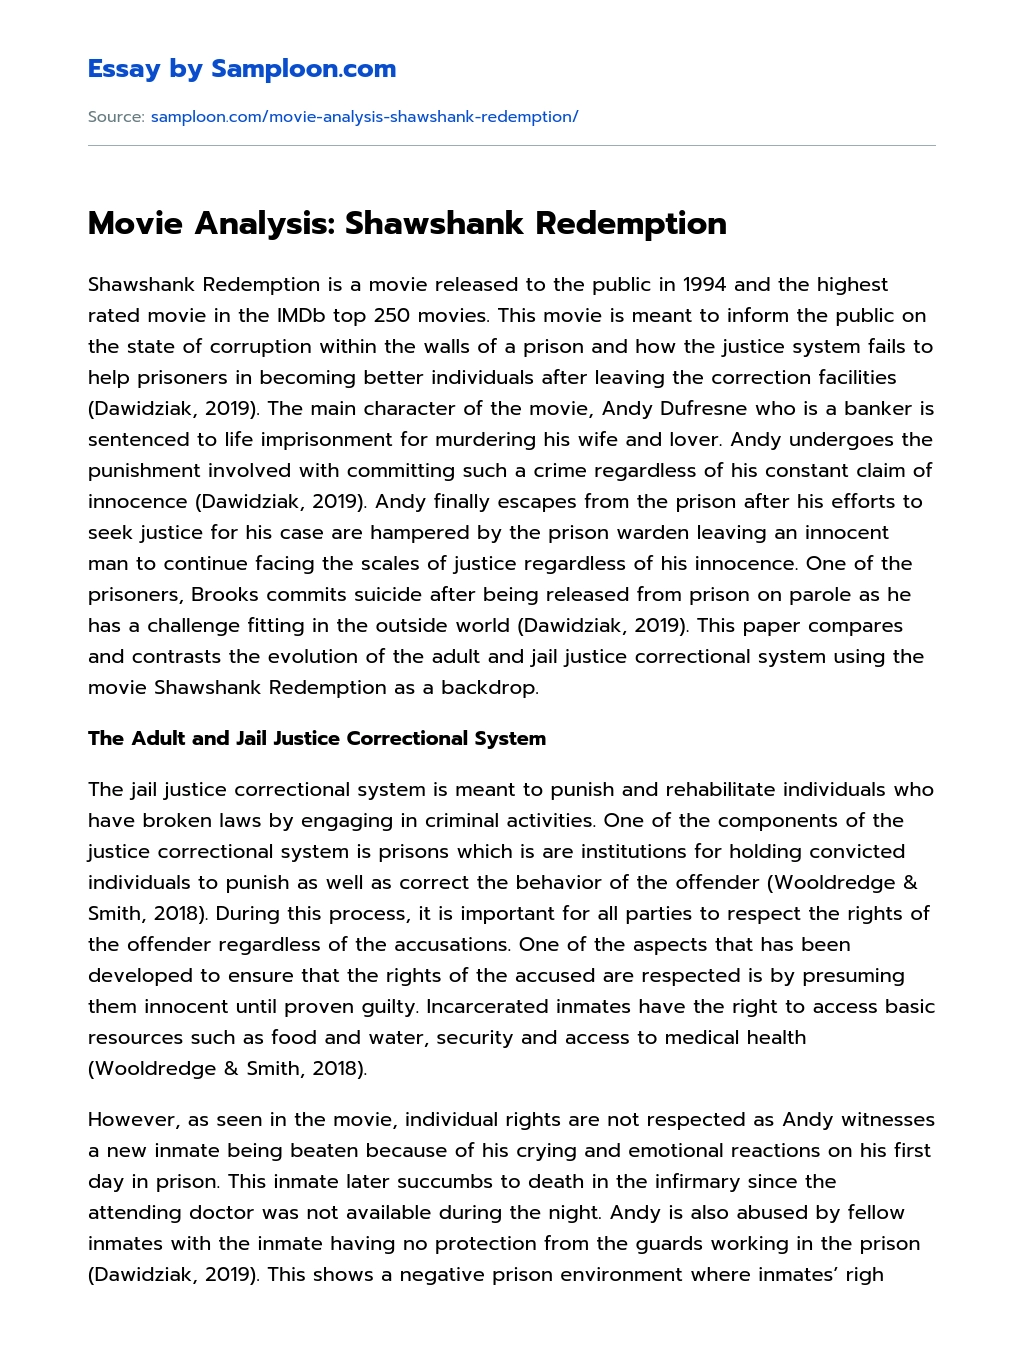 Movie Analysis: Shawshank Redemption essay